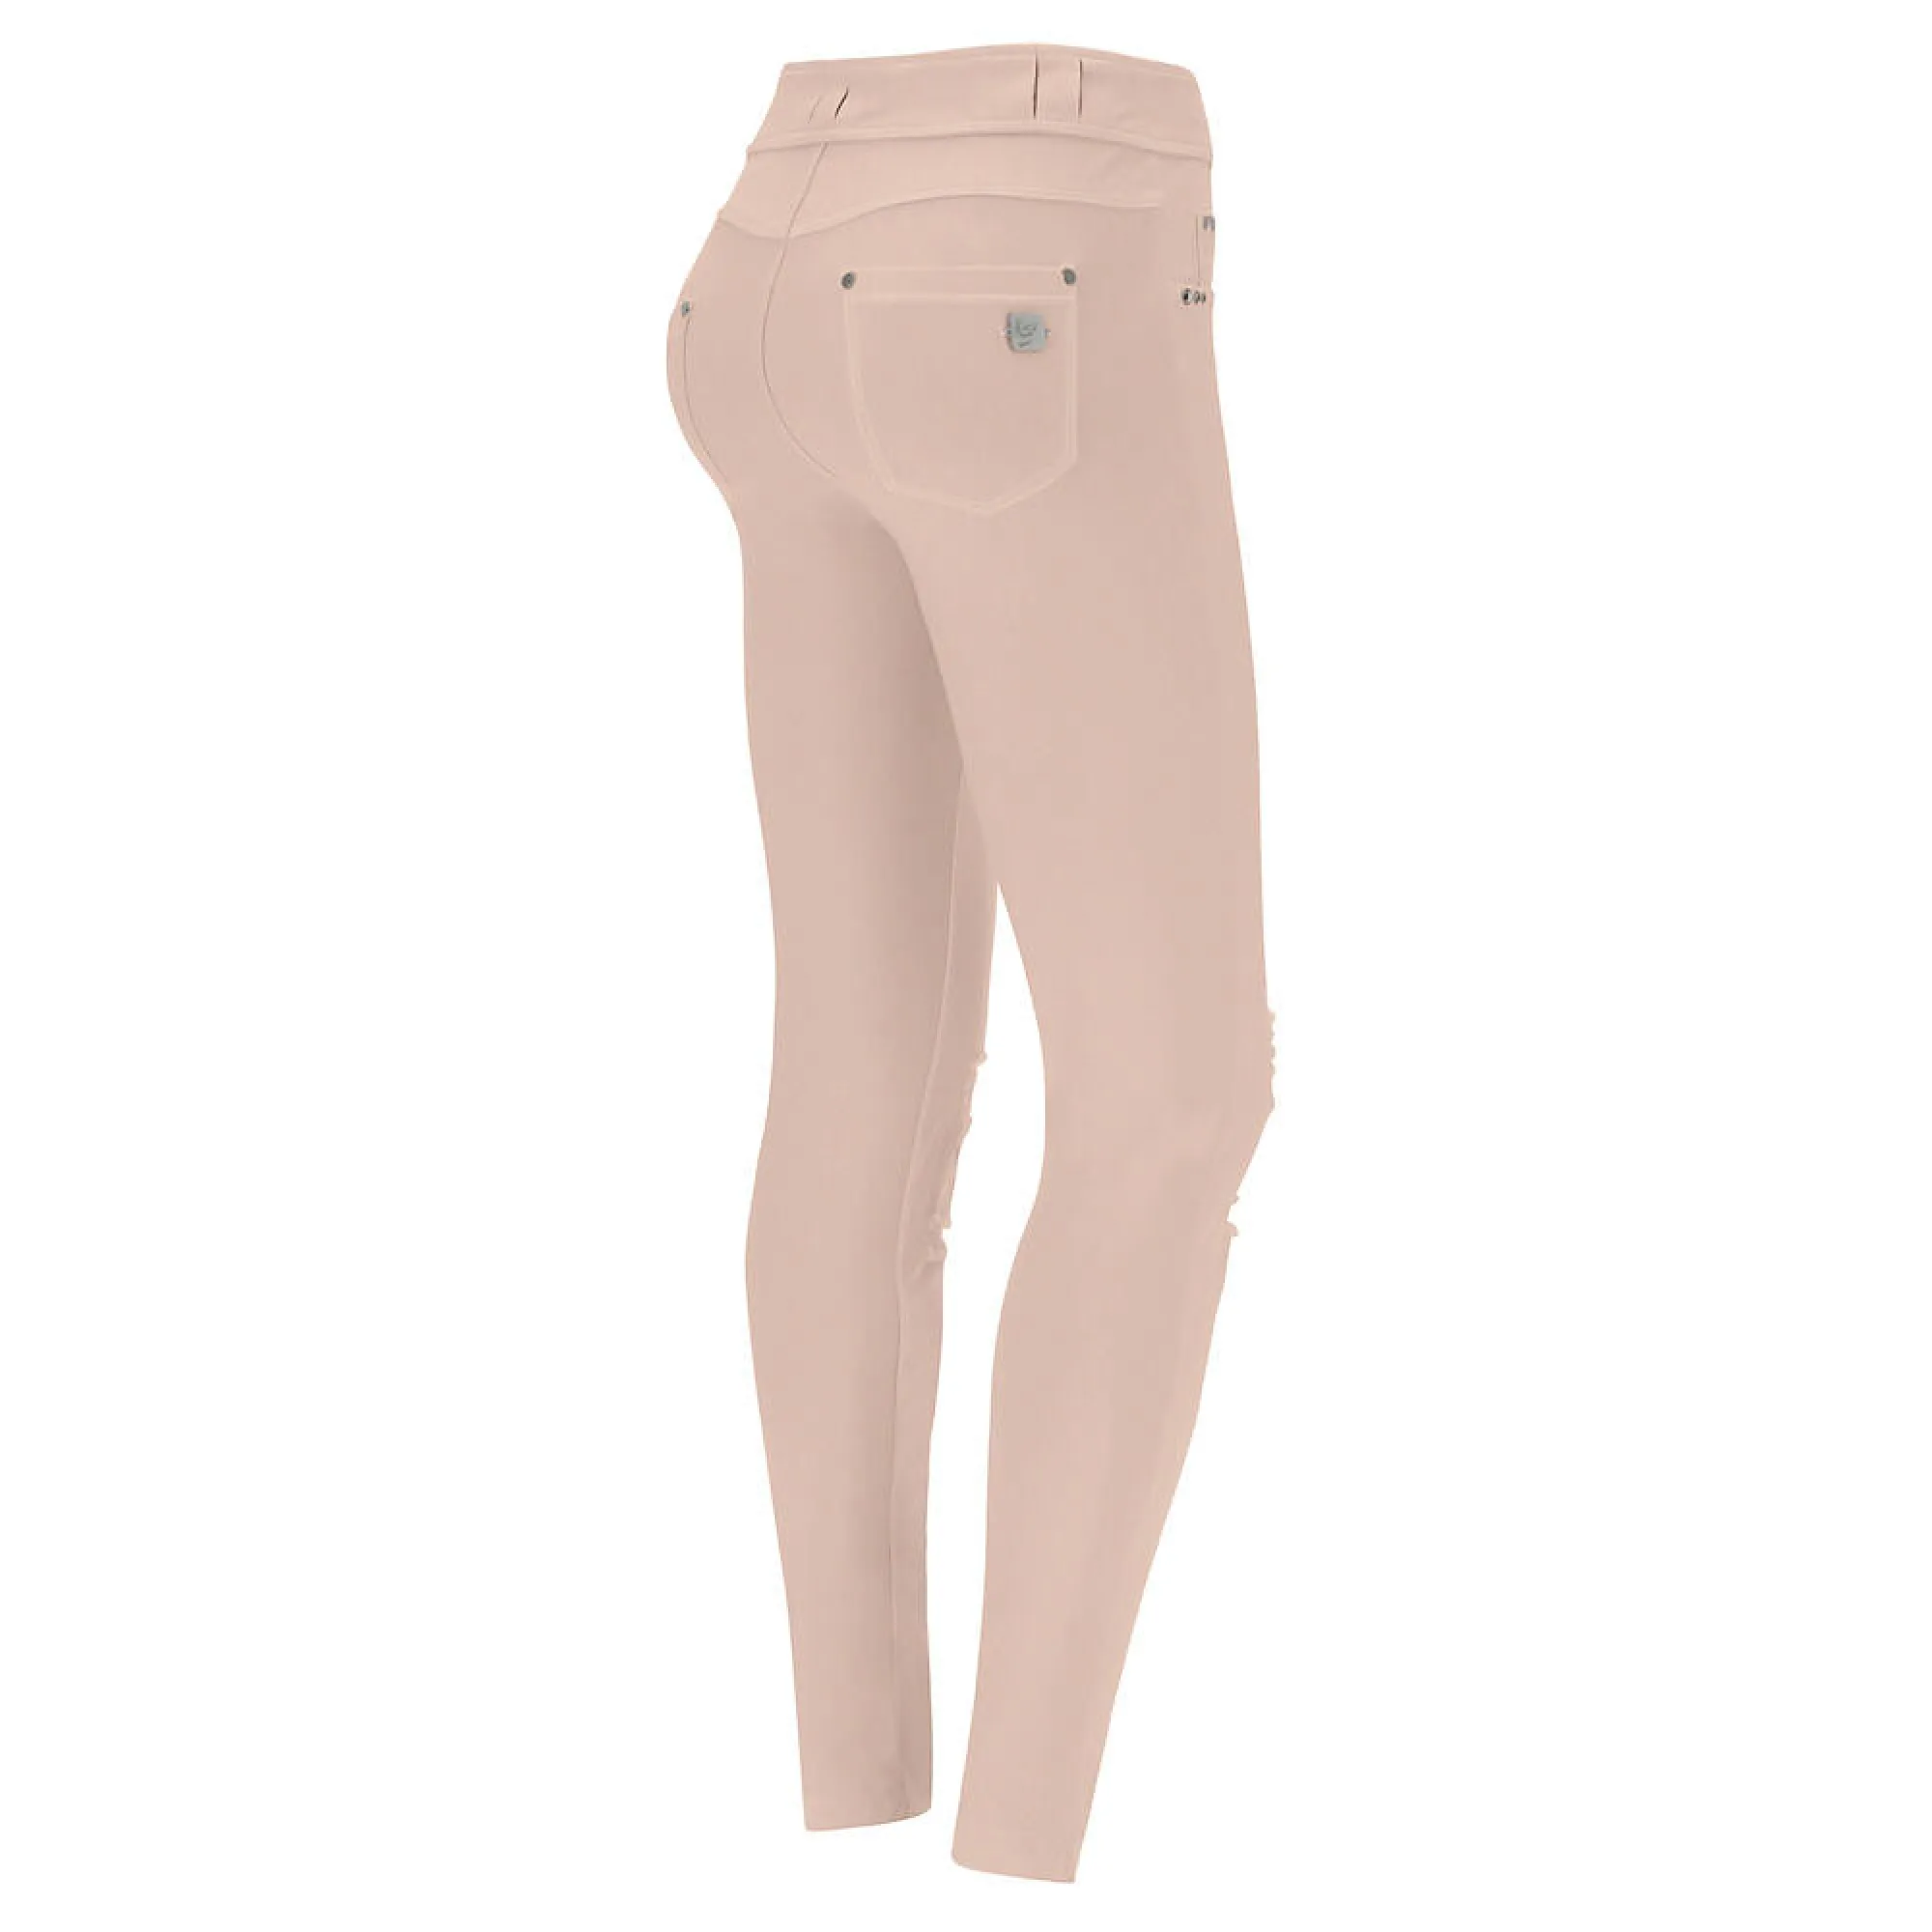 N.O.W.® Pants Distressed - Skinny z średnim stanem - Różany obłok - P340